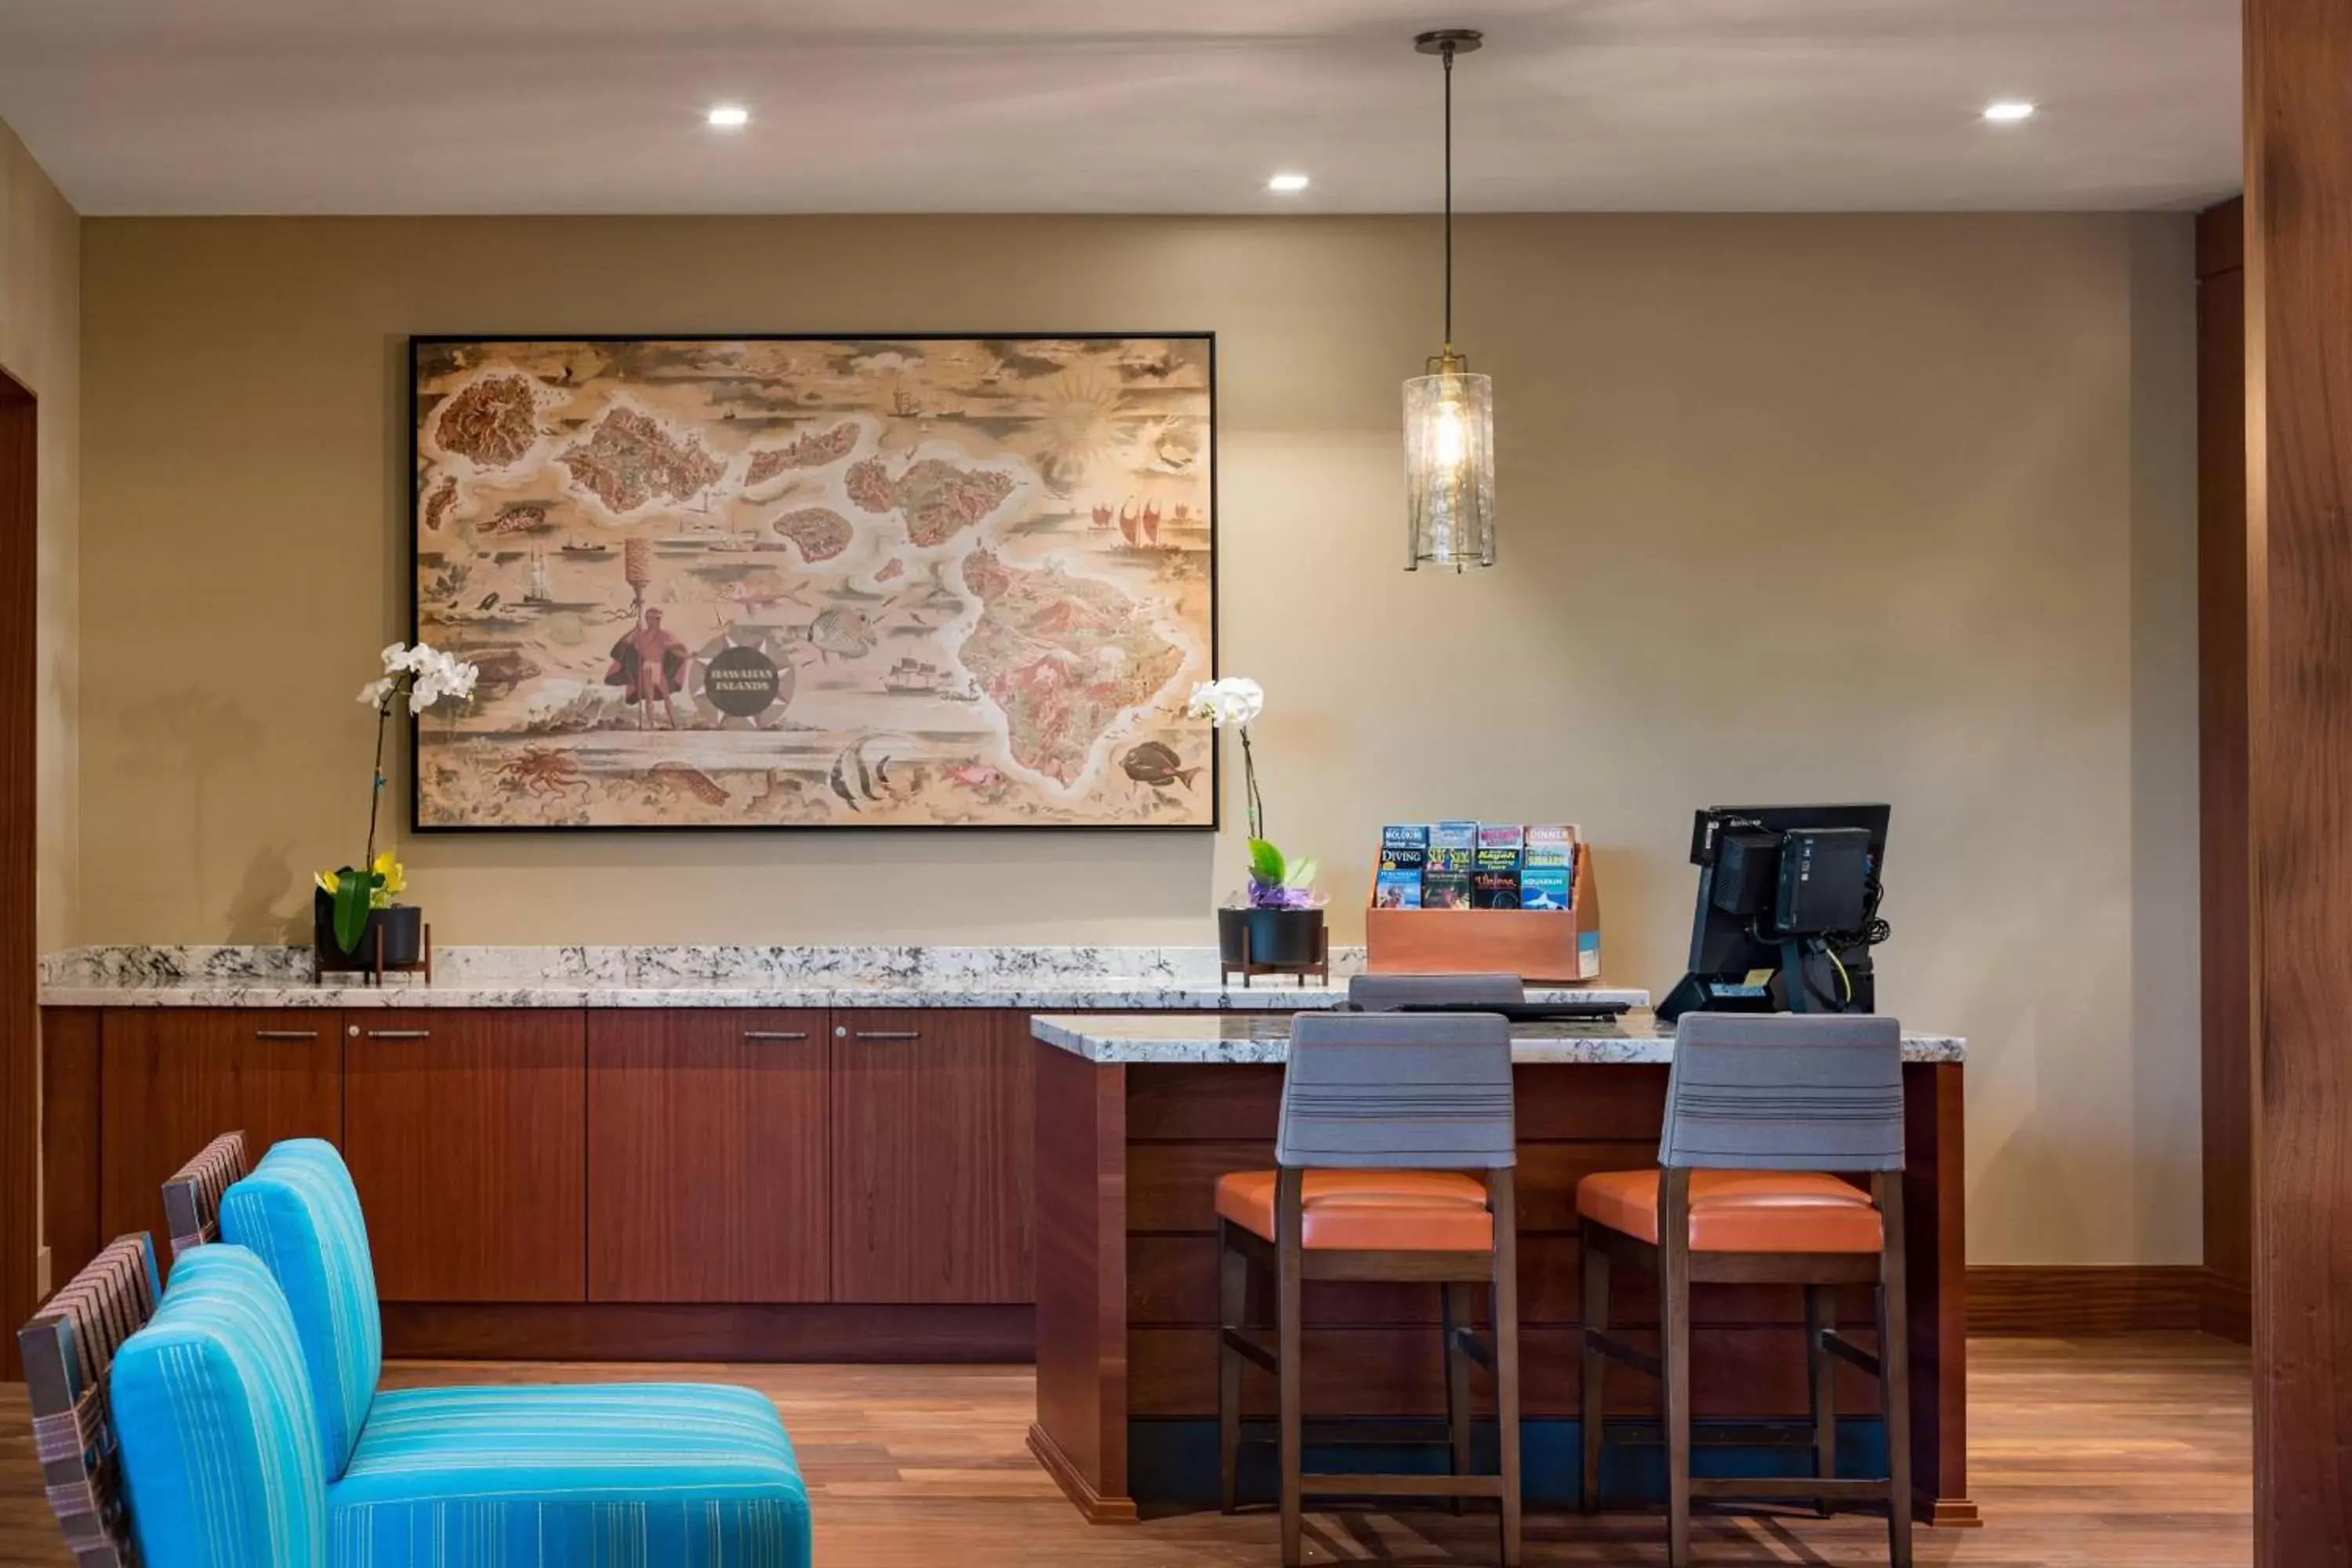 Lobby or reception in Residence Inn by Marriott Maui Wailea